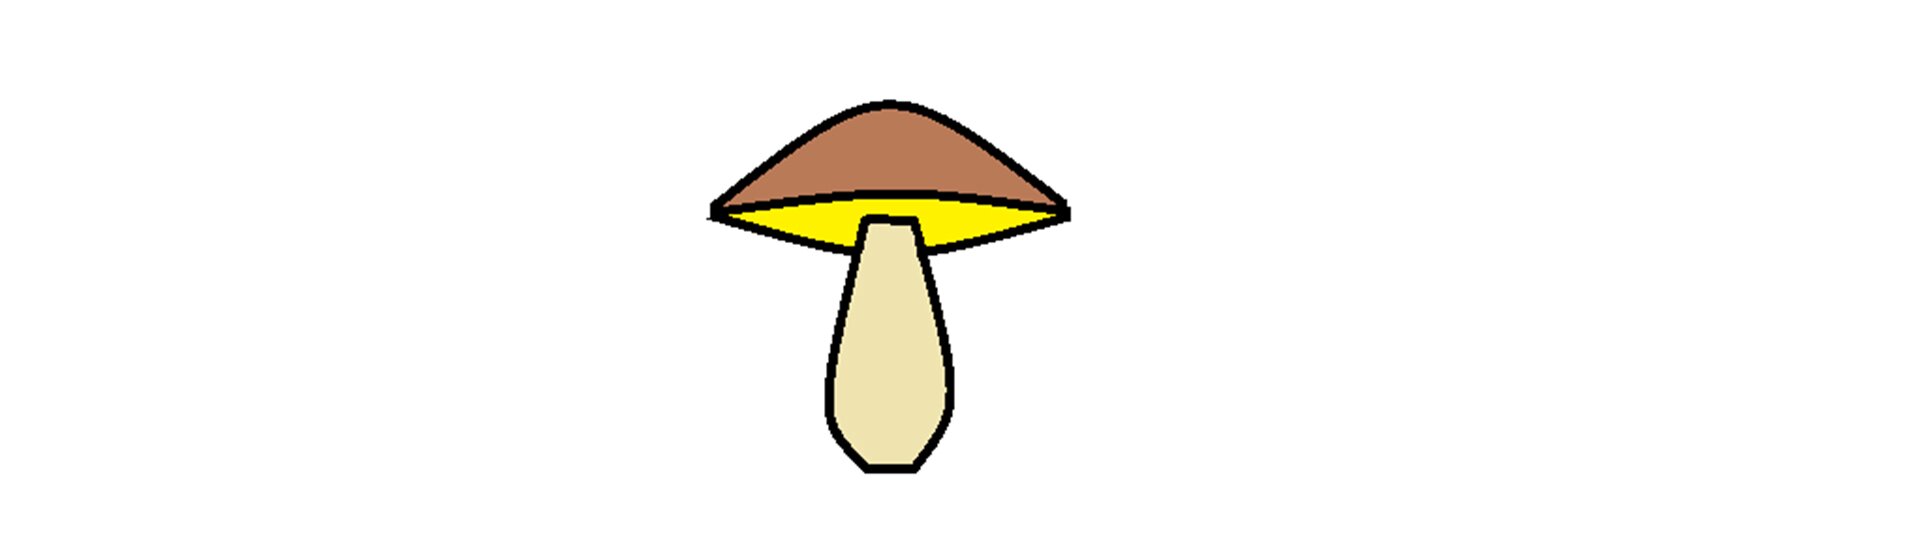 Ilustracja przedstawiająca grzybek wypełniony kolorami